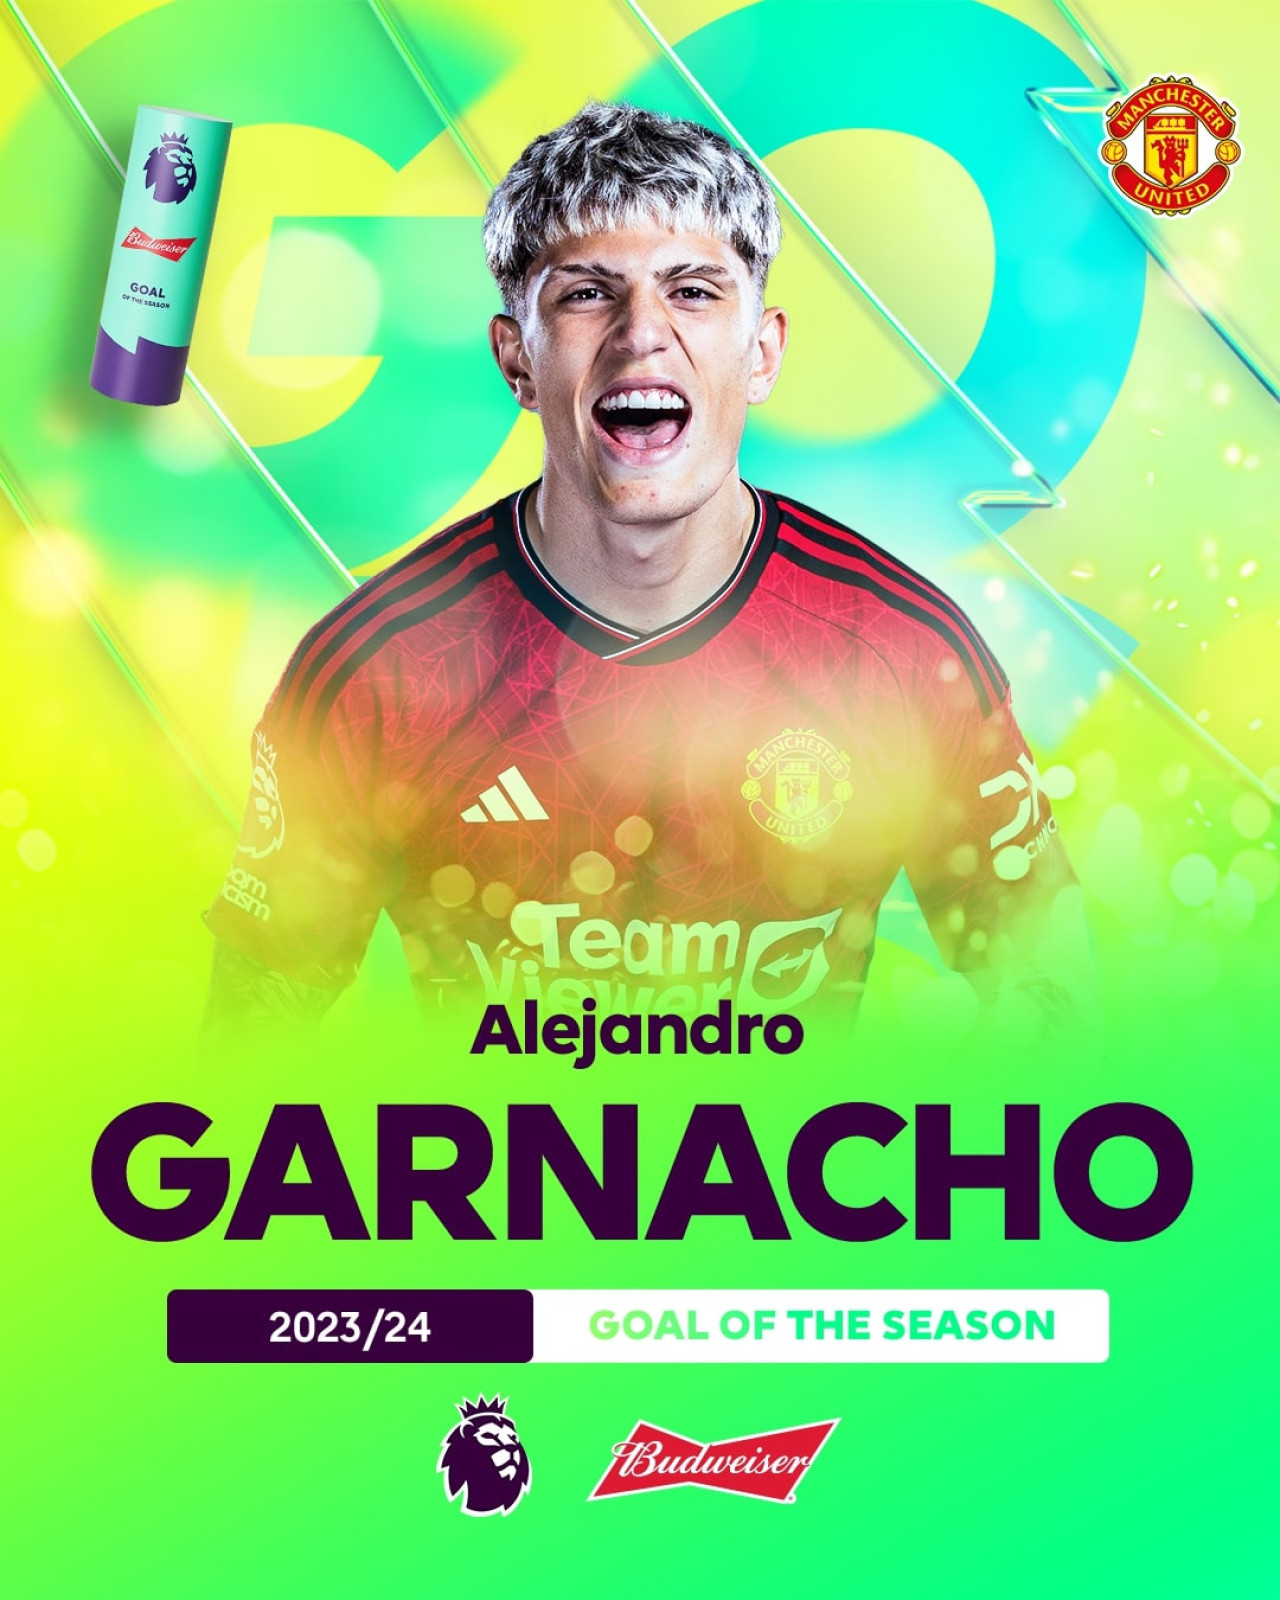 El gol de Garnacho elegido como el mejor de la temporada por la Premier League. Foto: X/premierleague